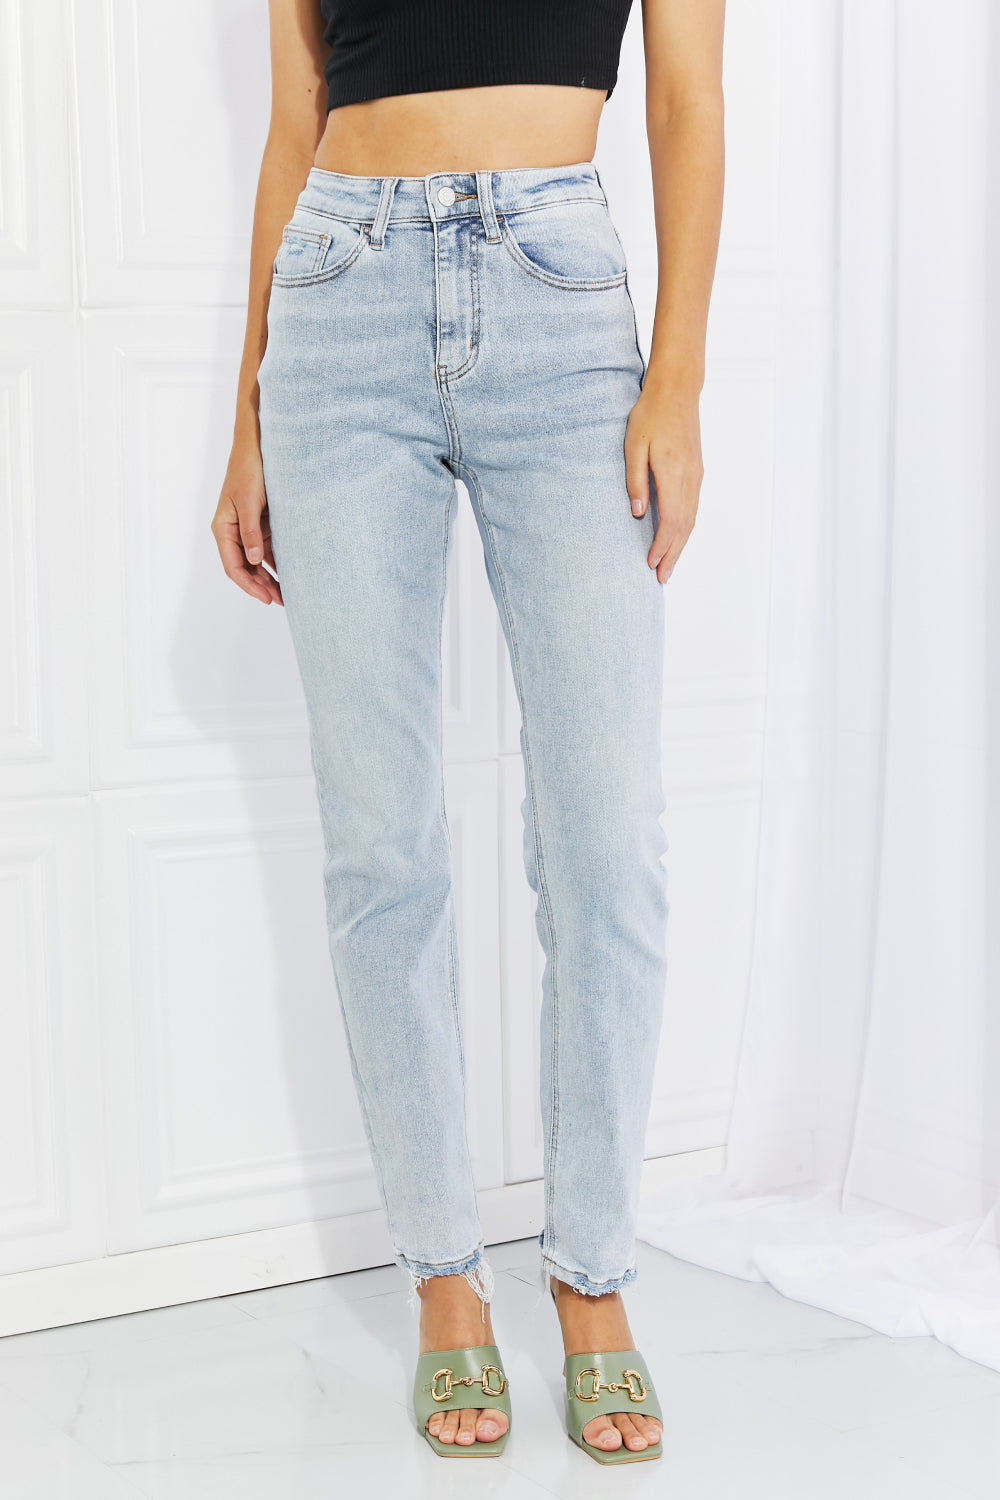 Lovervet Full Size Raw Hem High-Waisted Jeans